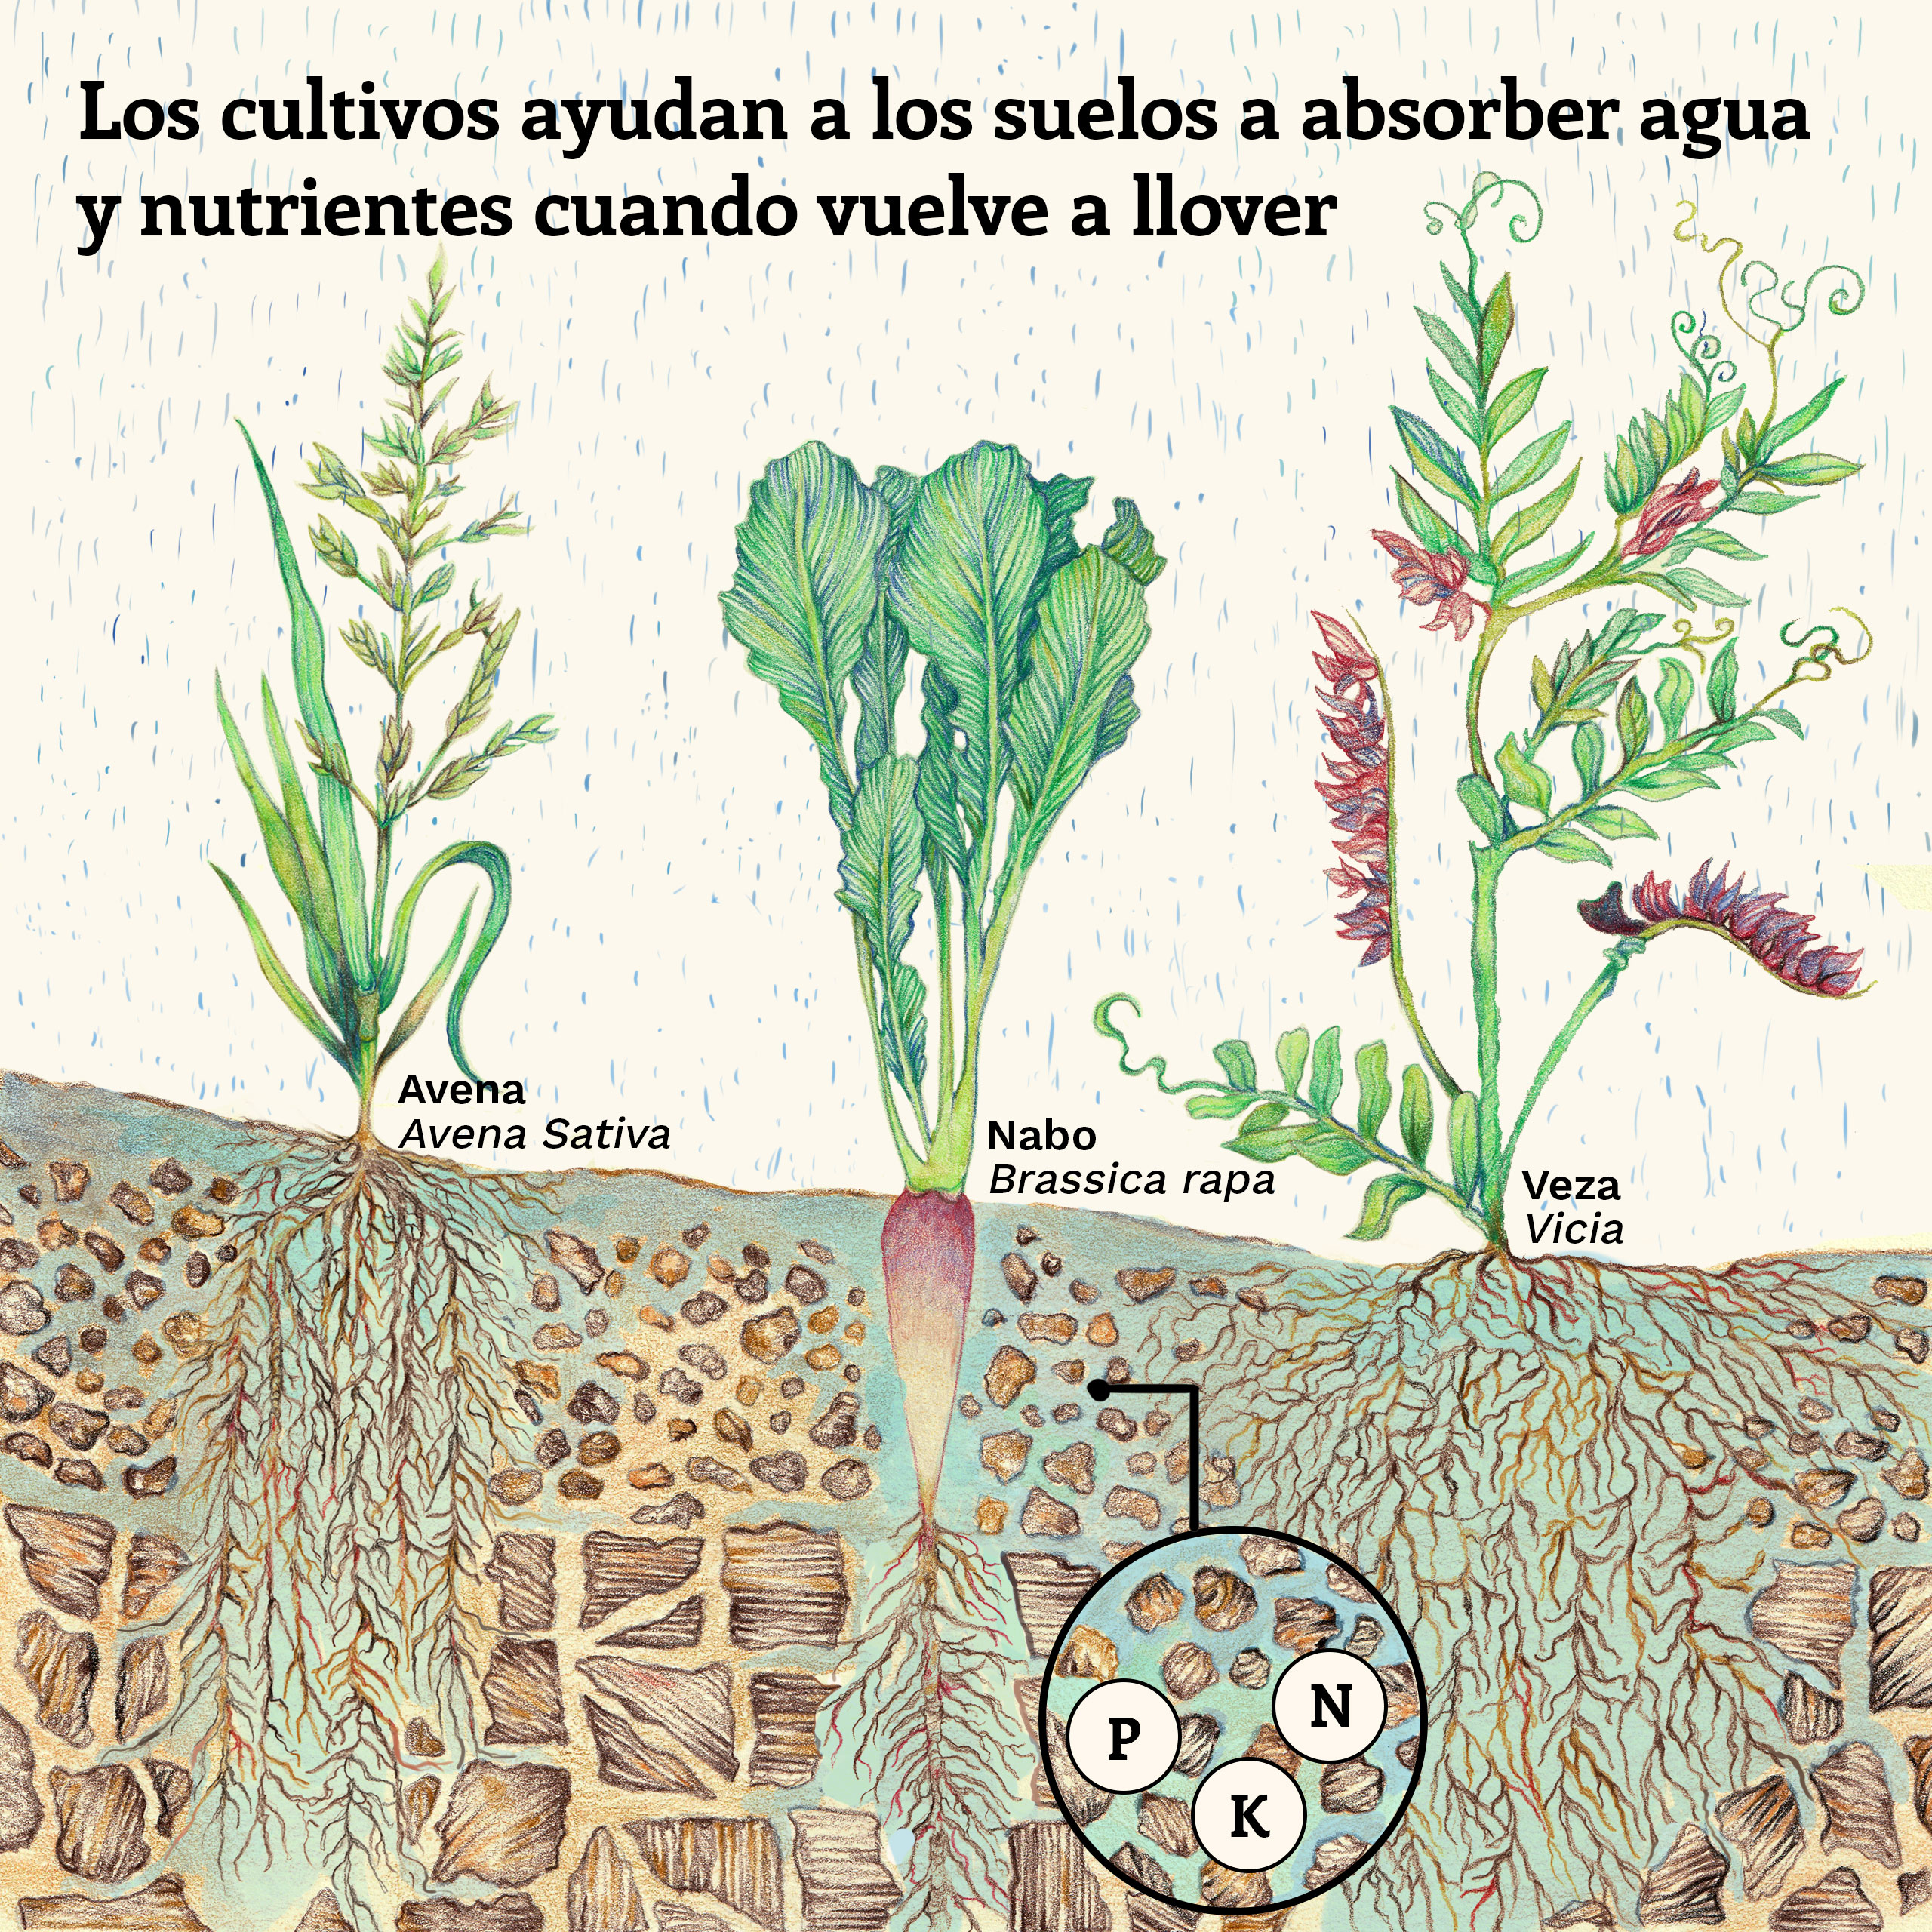 Ilustración que muestra cómo algunas especies ayudan a la estructura de los suelos